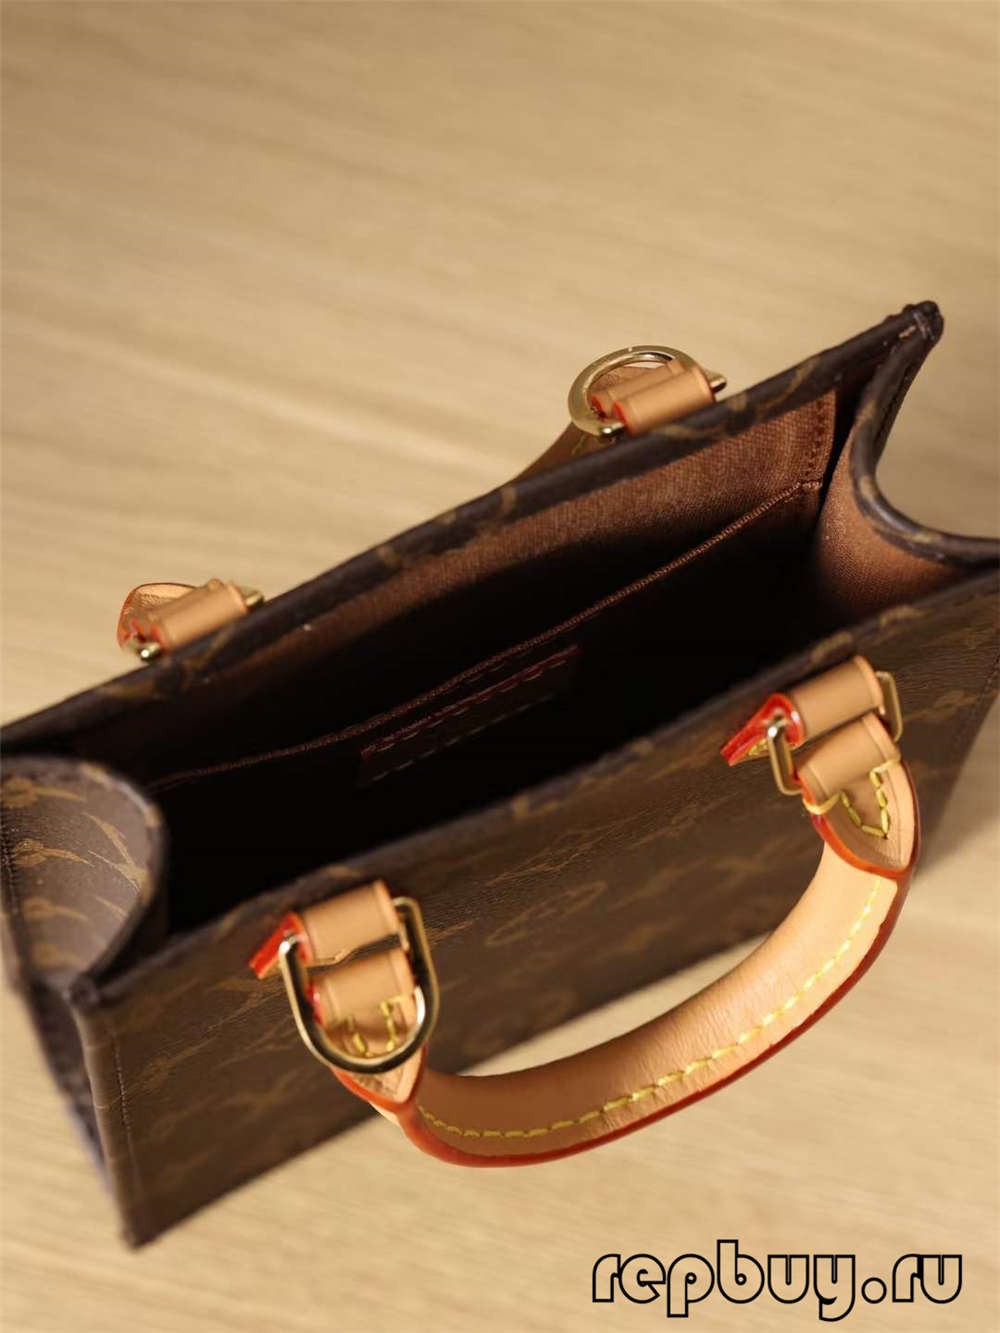 Túi Louis Vuitton M69442 Petit Sac Plat bản sao chất lượng hàng đầu (Cập nhật năm 2022) - Chất lượng tốt nhất Túi Louis Vuitton giả Cửa hàng trực tuyến, Túi thiết kế bản sao ru